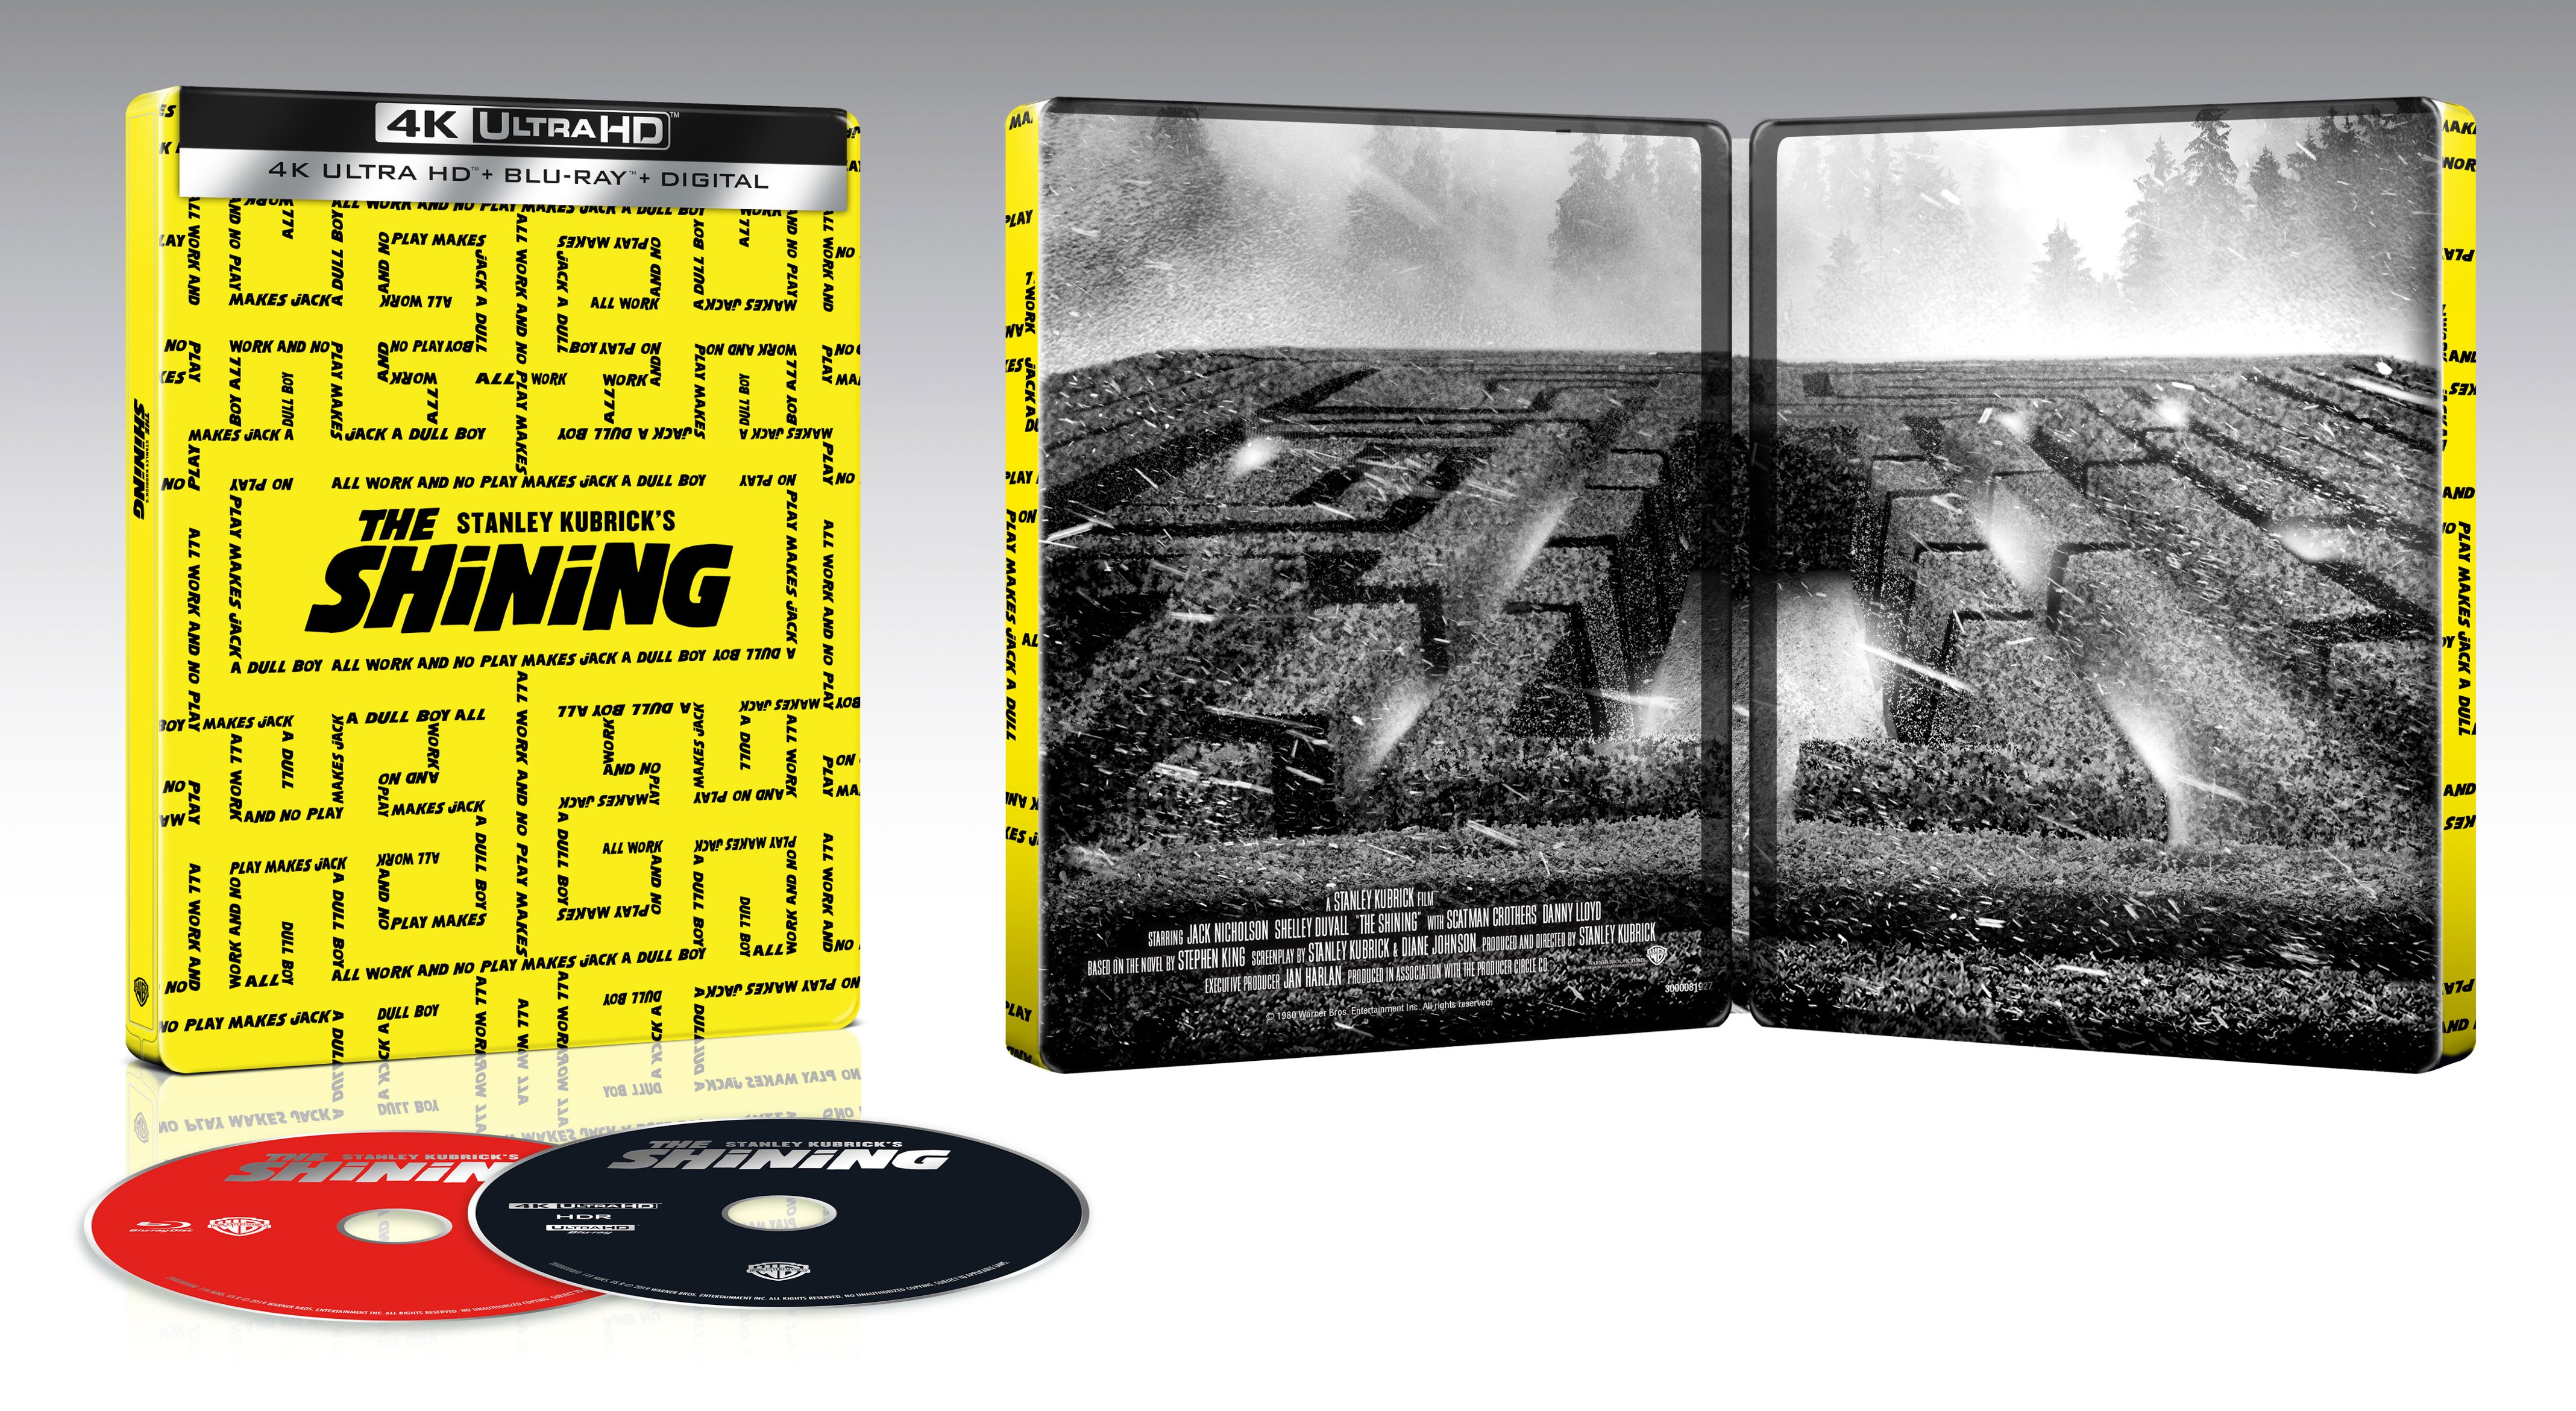 The Shining [SteelBook] [Includes Digital Copy] [4K Ultra HD Blu-ray/Blu-ray] [Only @ Best Buy] [1980]